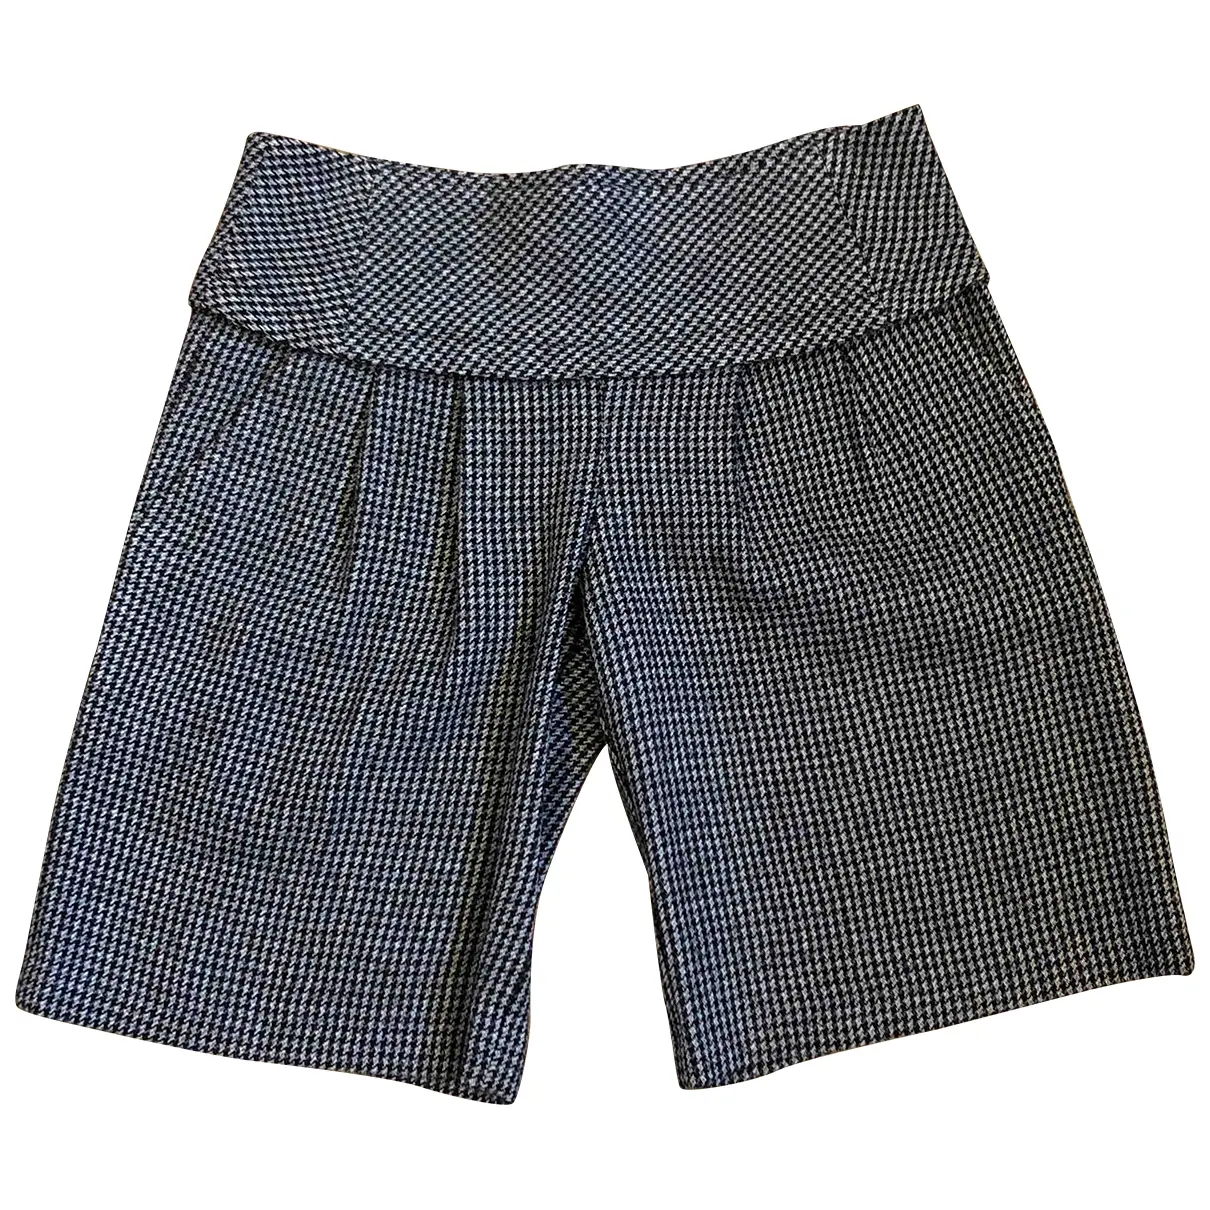 Wool shorts Max & Co